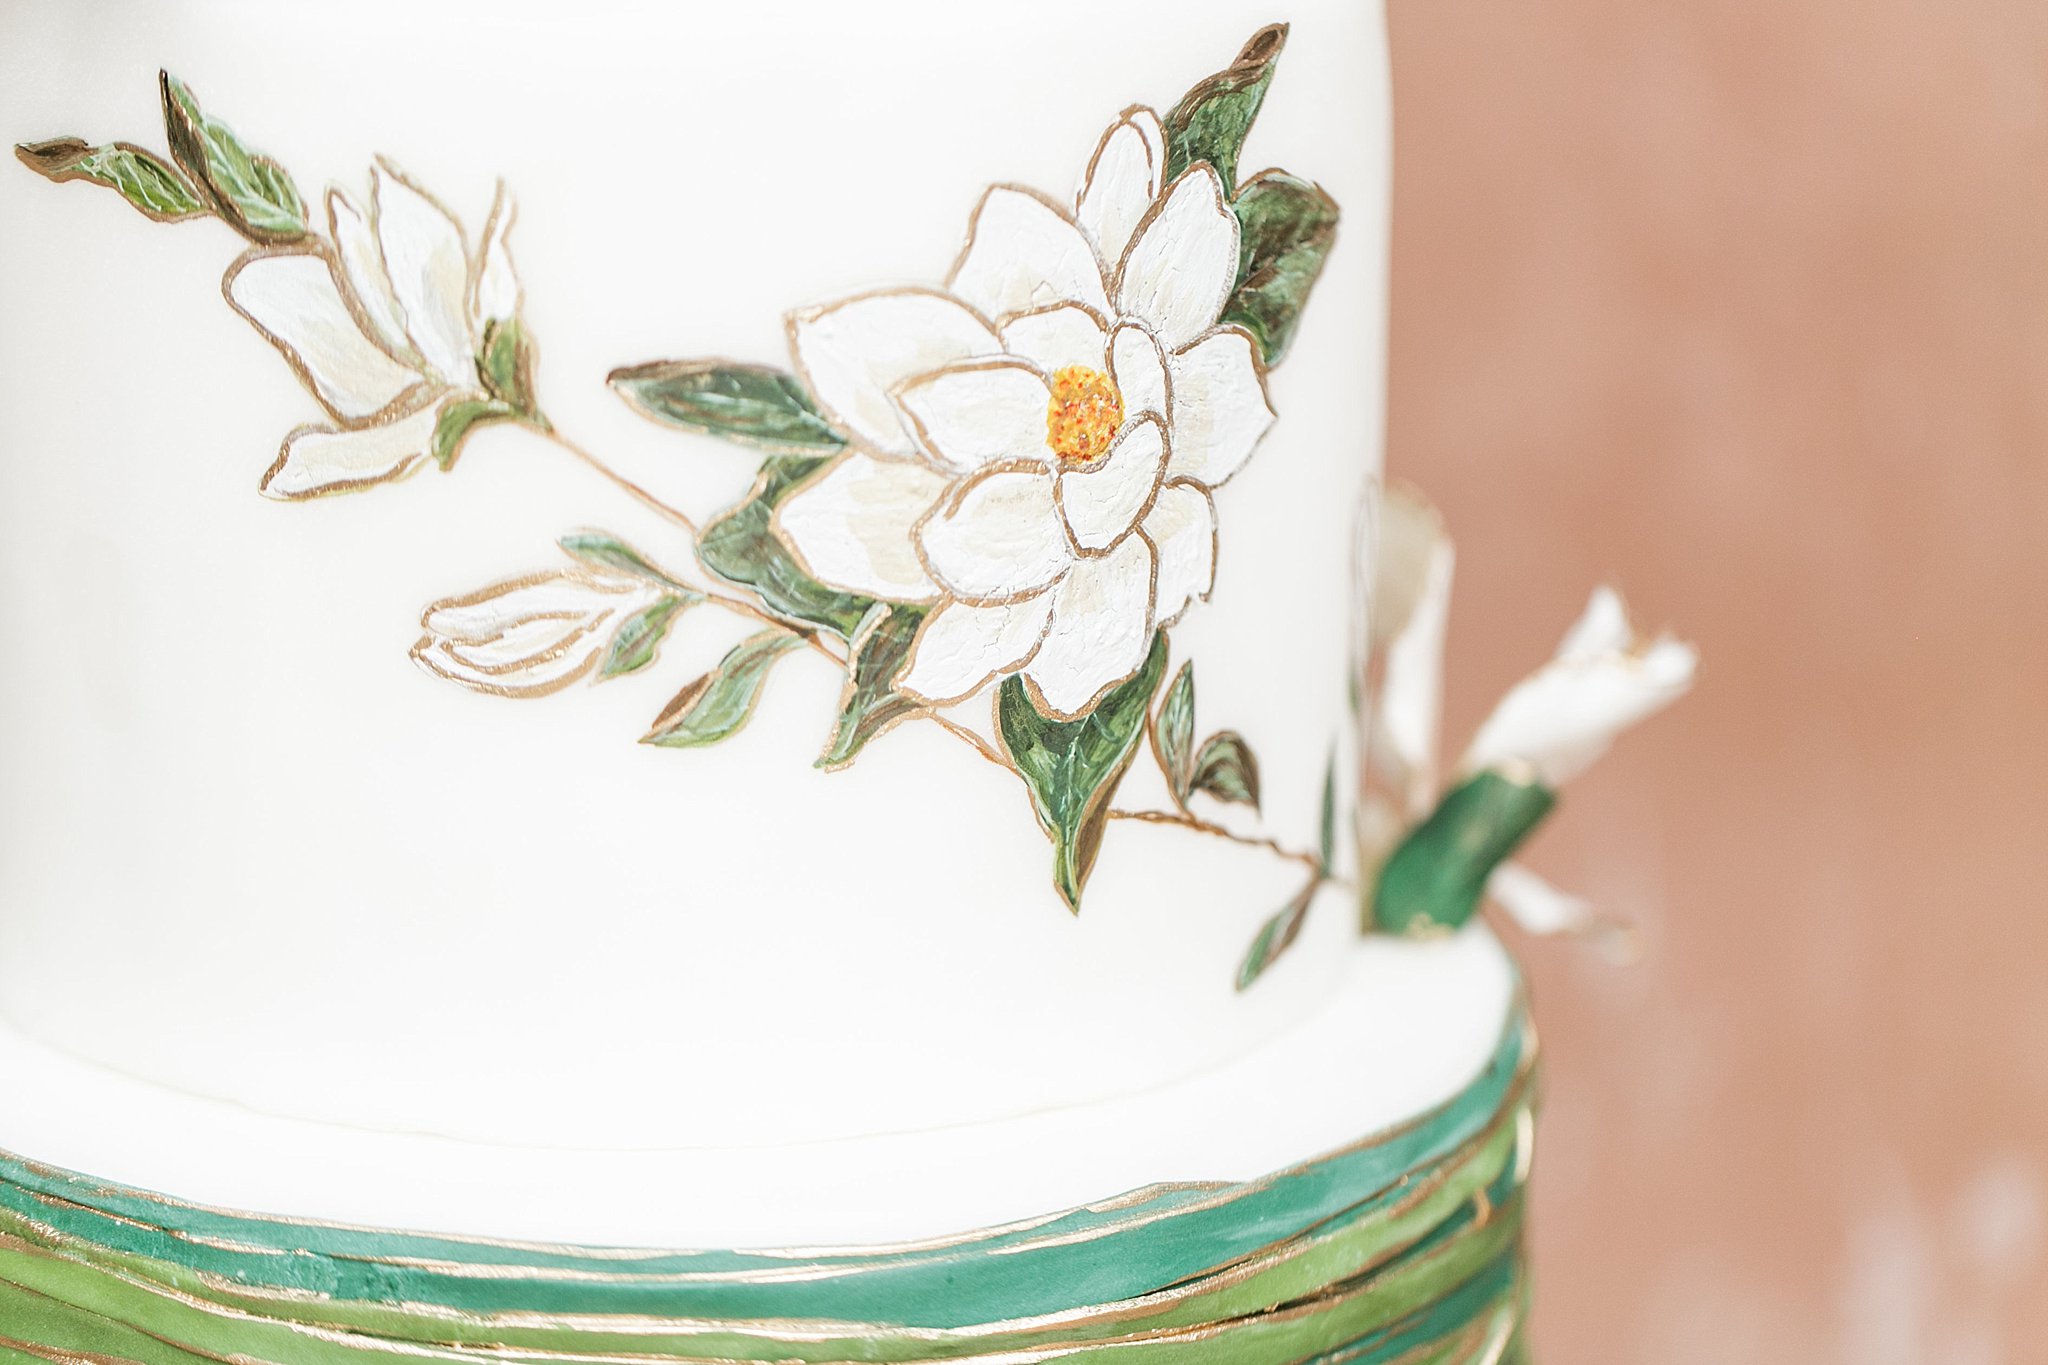 Vintage southern mansion wedding cake close up details.